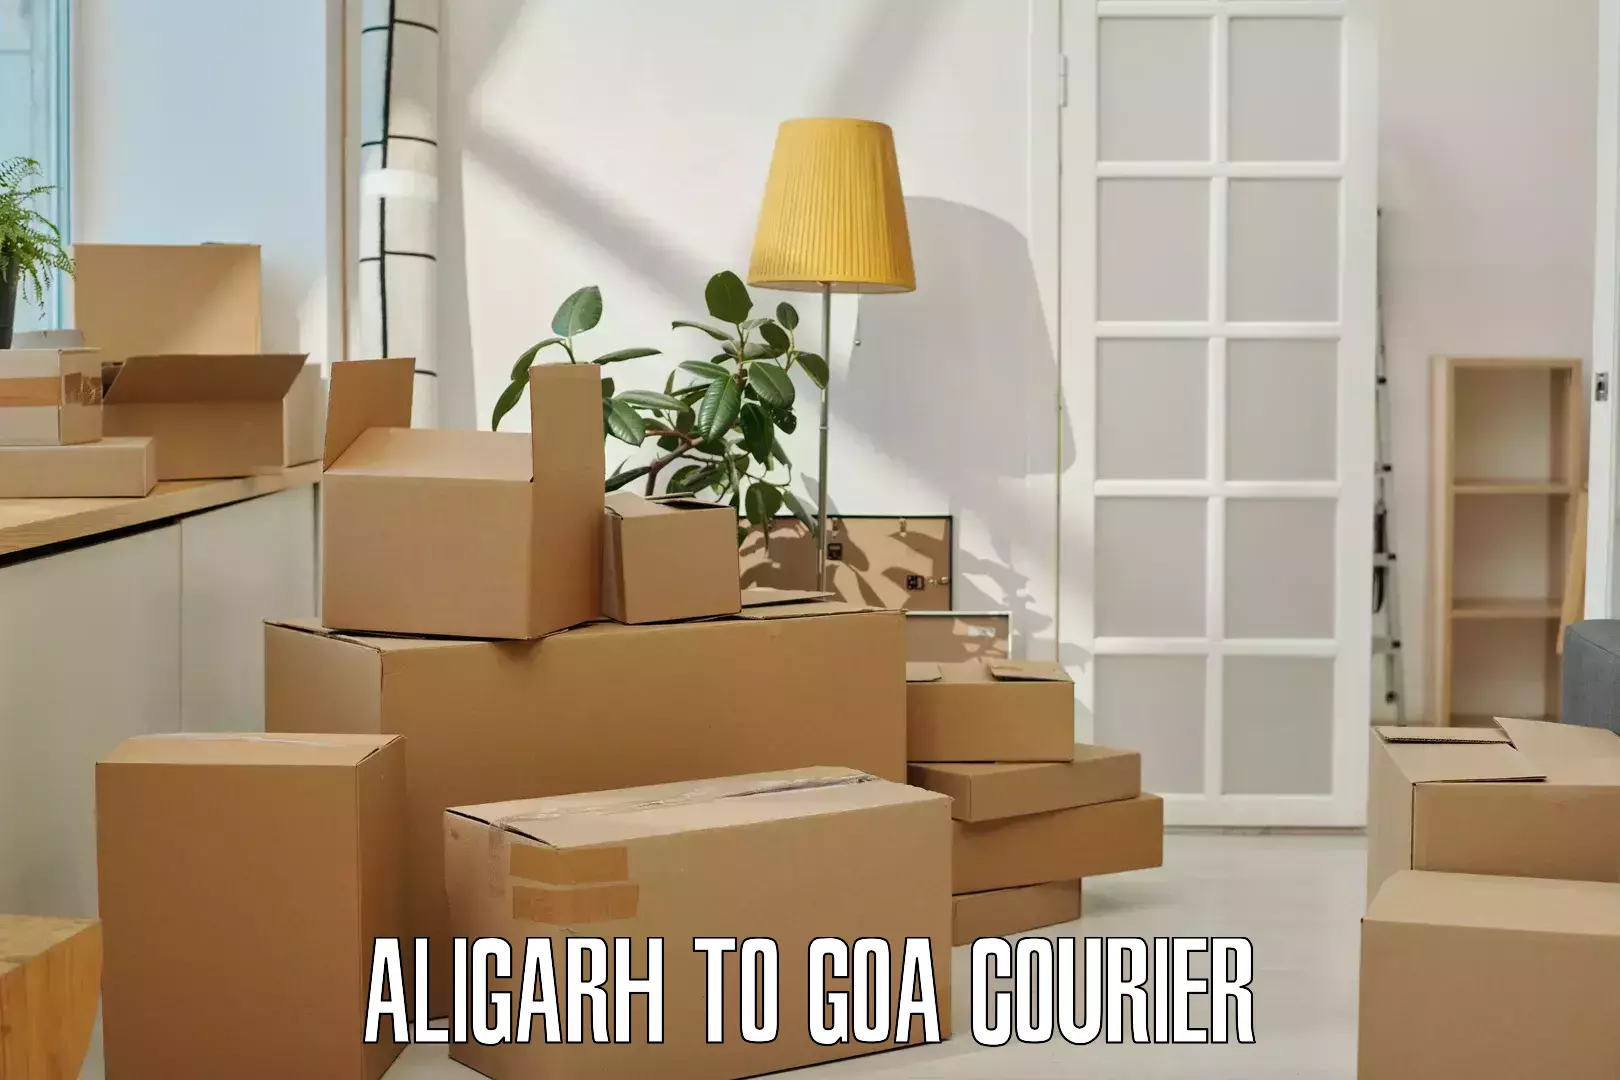 24-hour courier service Aligarh to Ponda